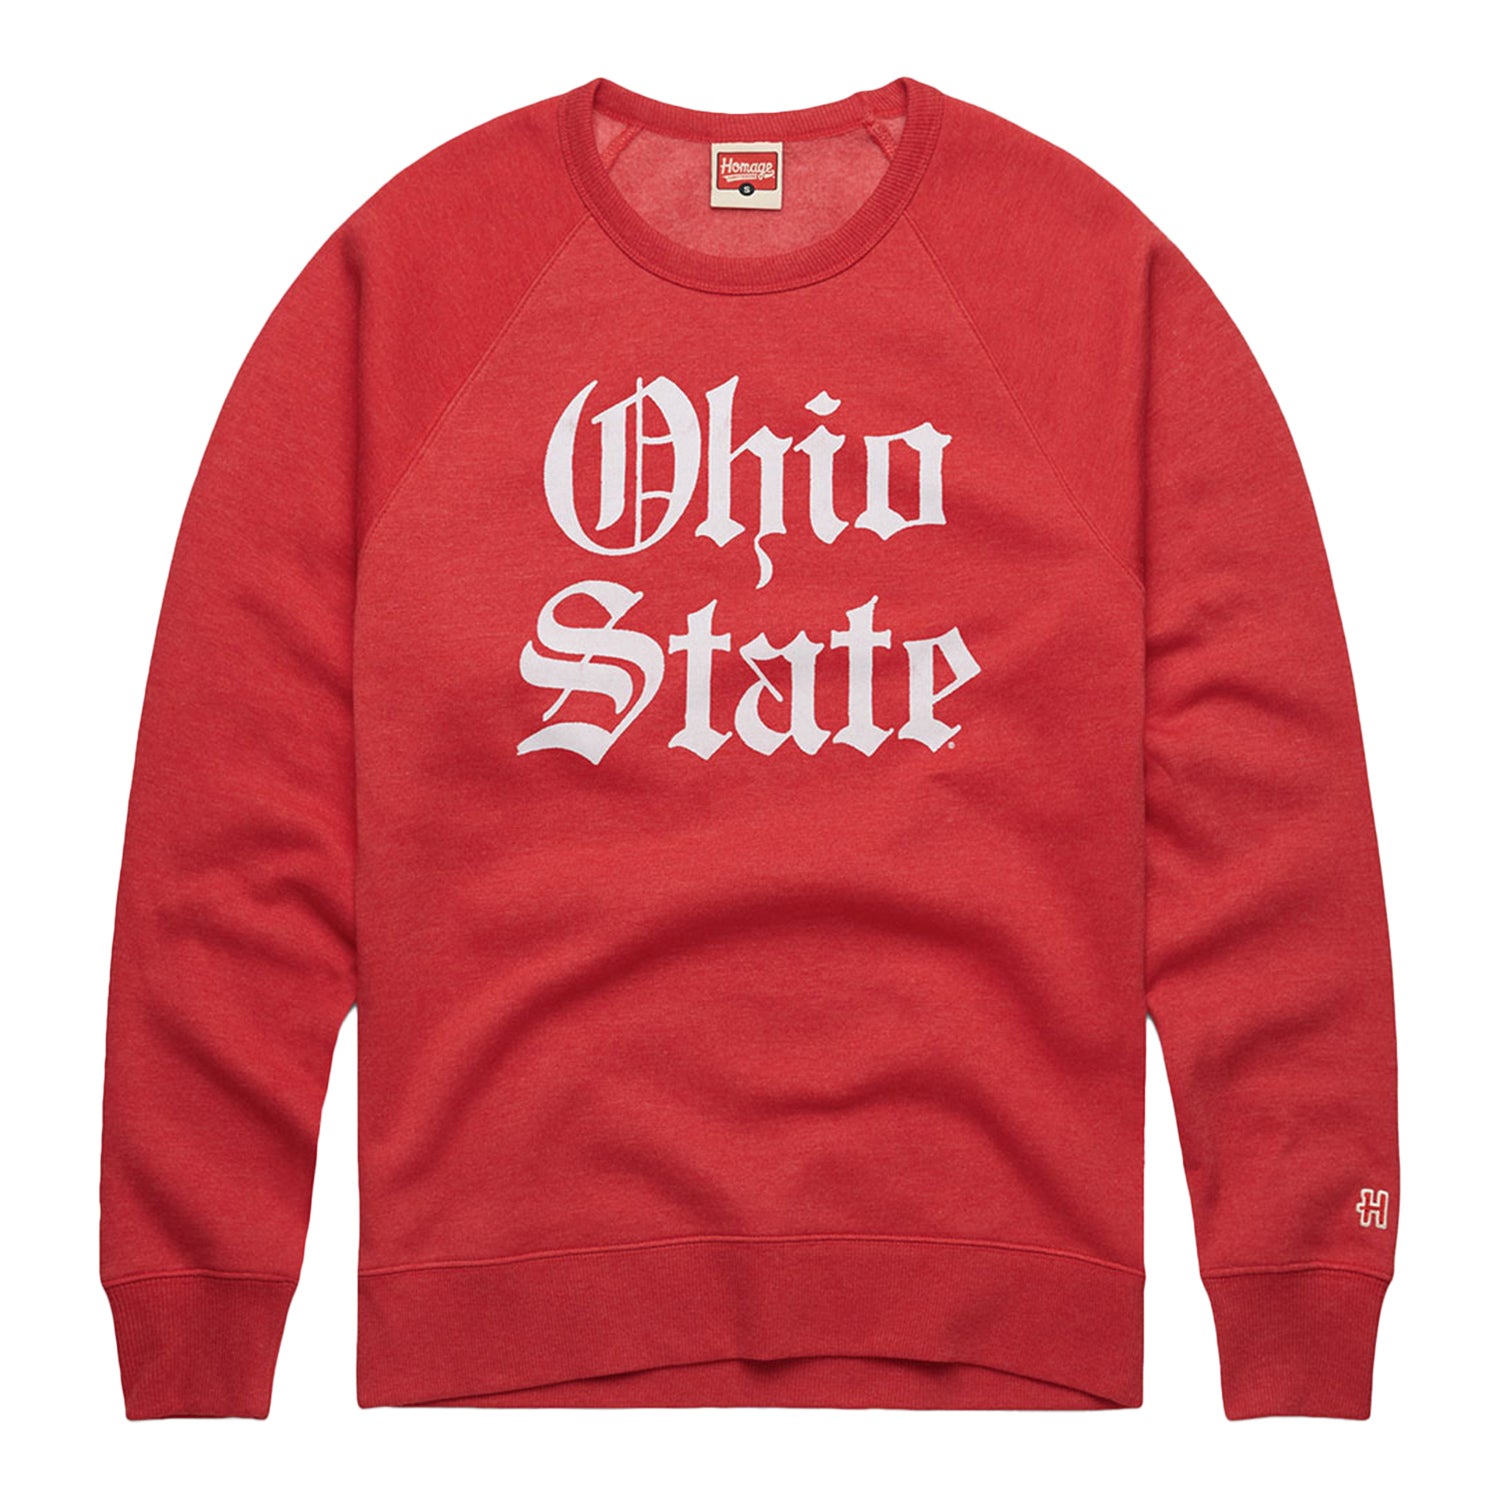 Ohio State Buckeyes Olde English Crew Neck Sweatshirt